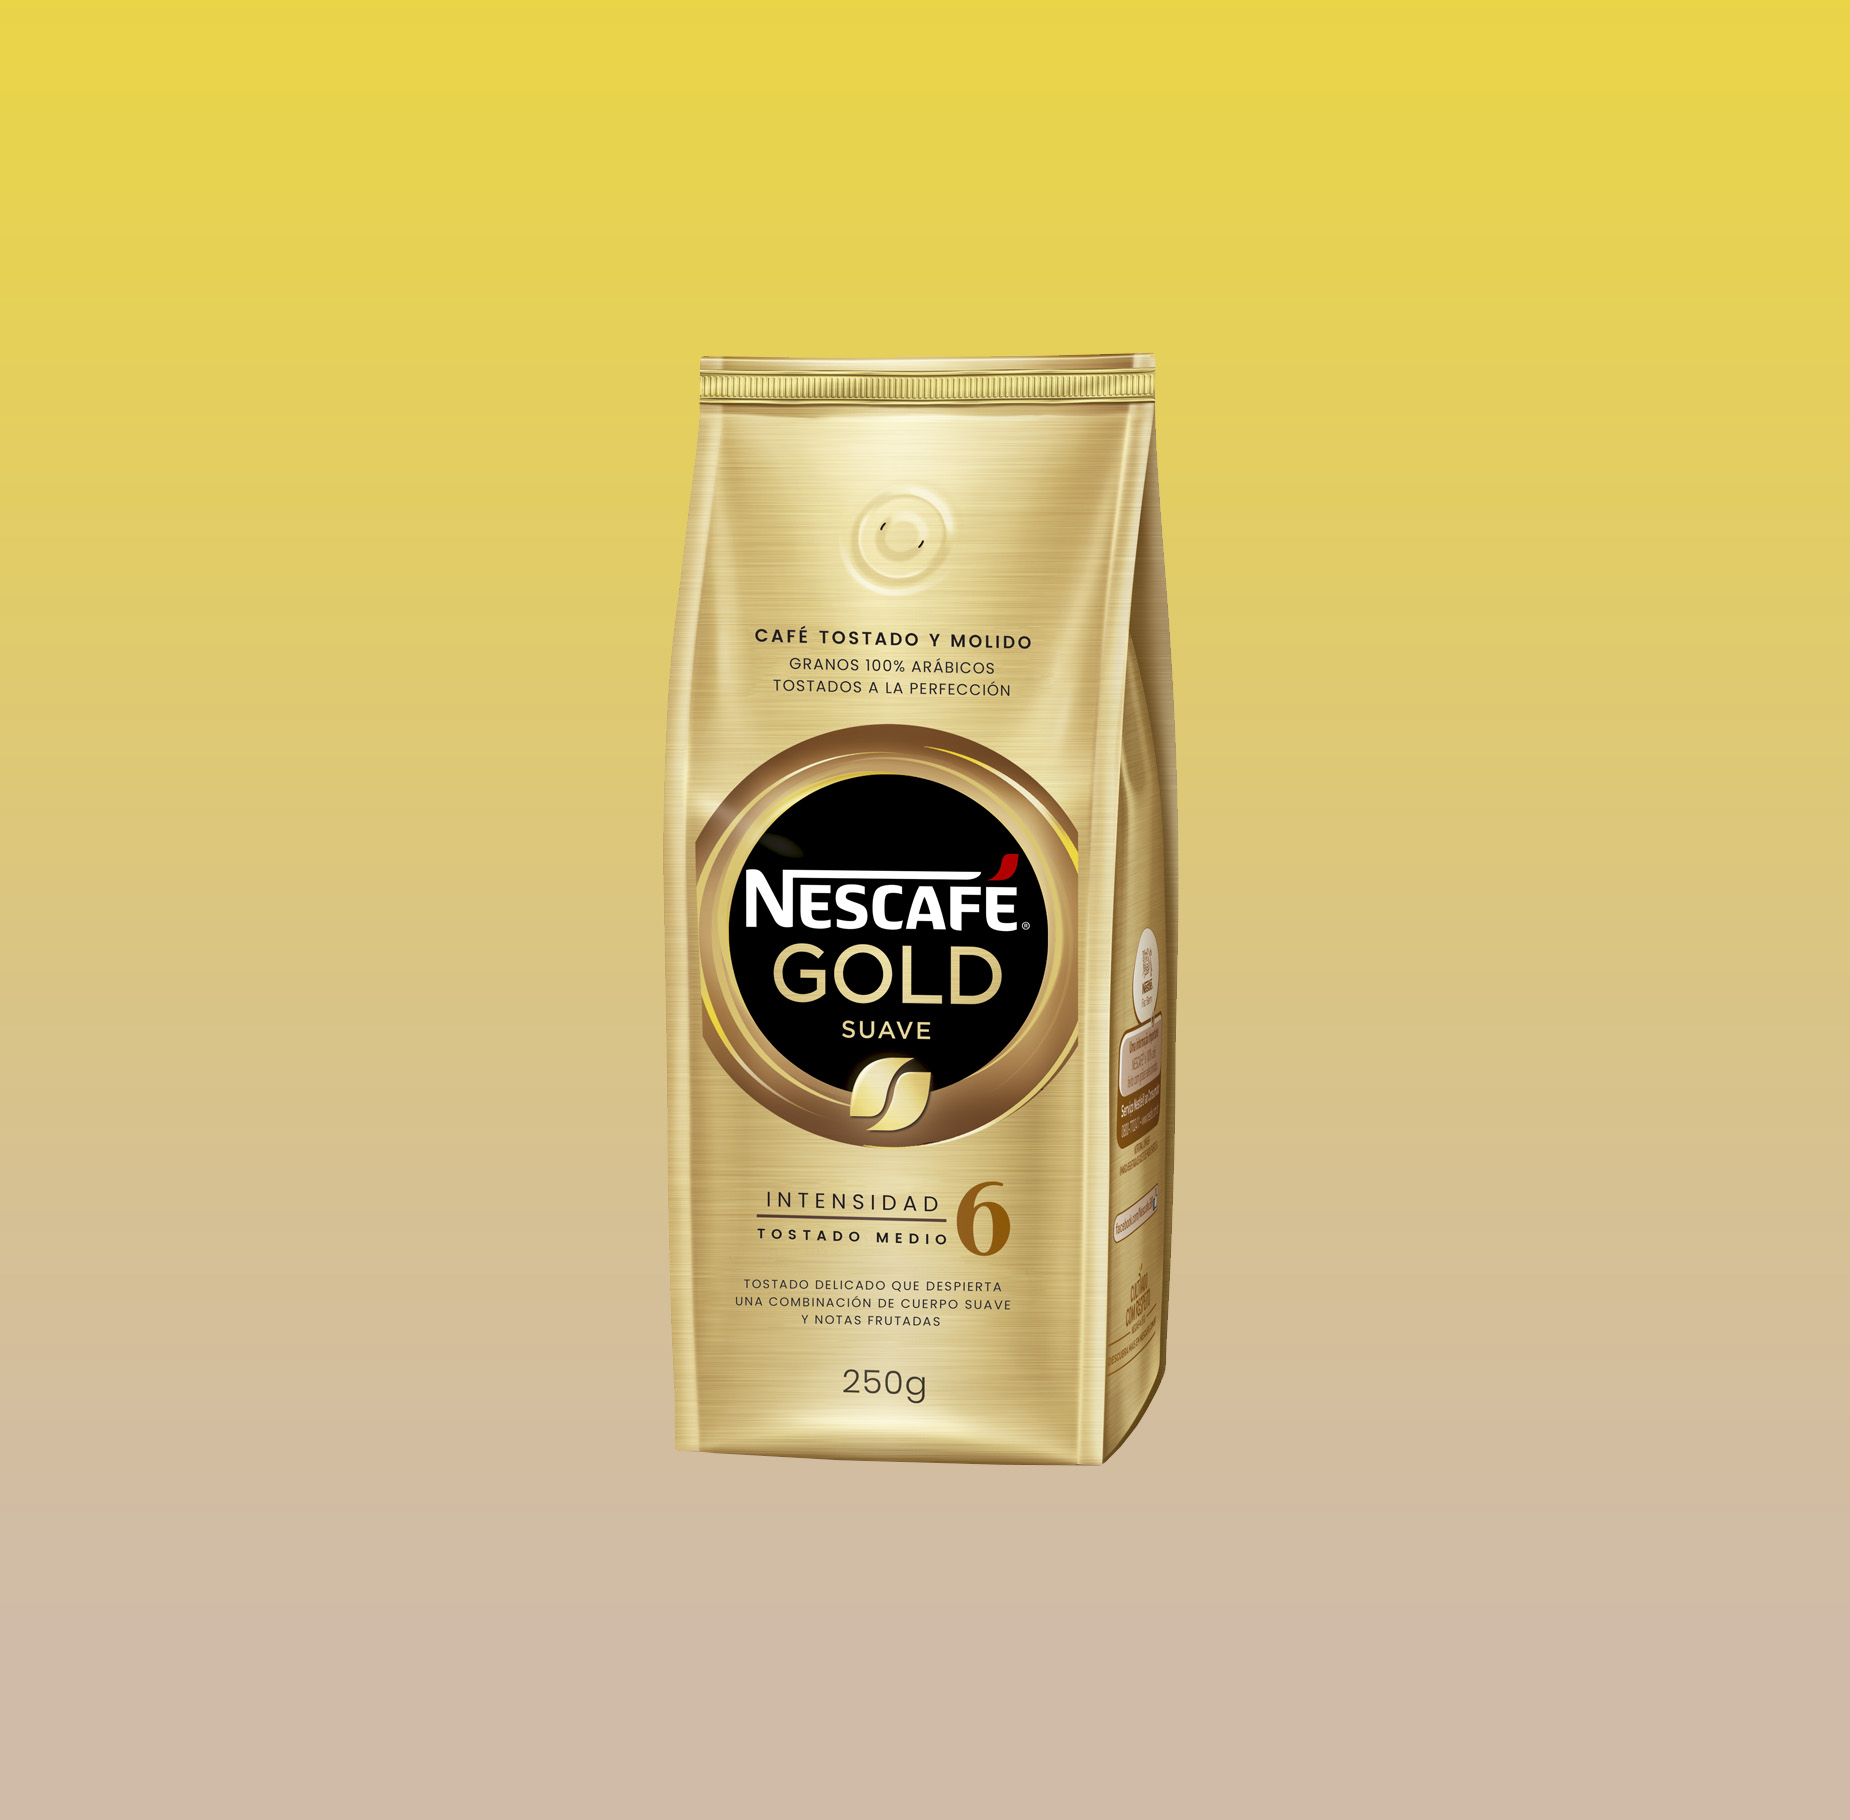 Nescafe Gold 6 250g